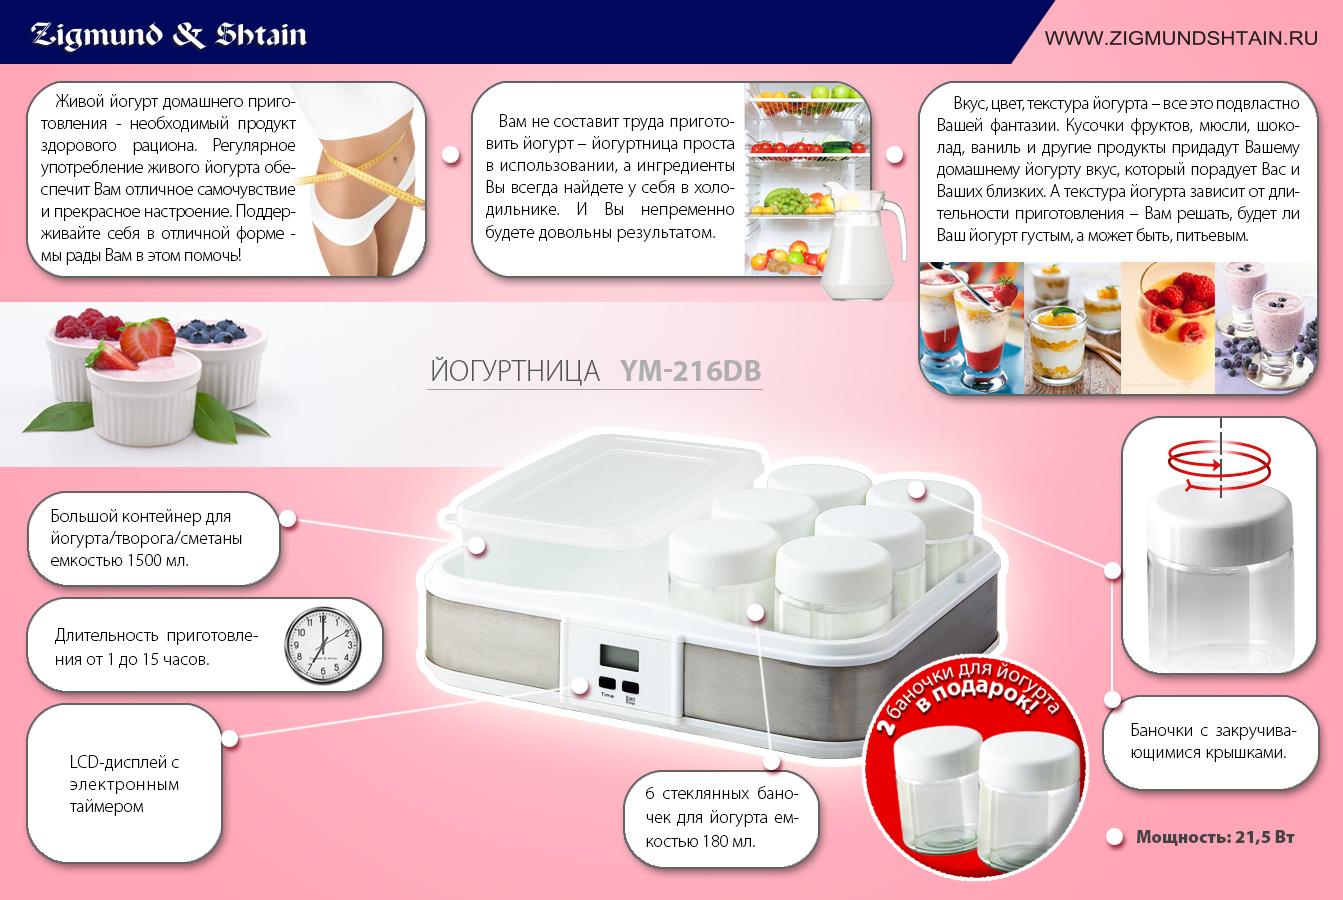 Для ценителей полезной пищи новые йогуртницы от Zigmund & Shtain